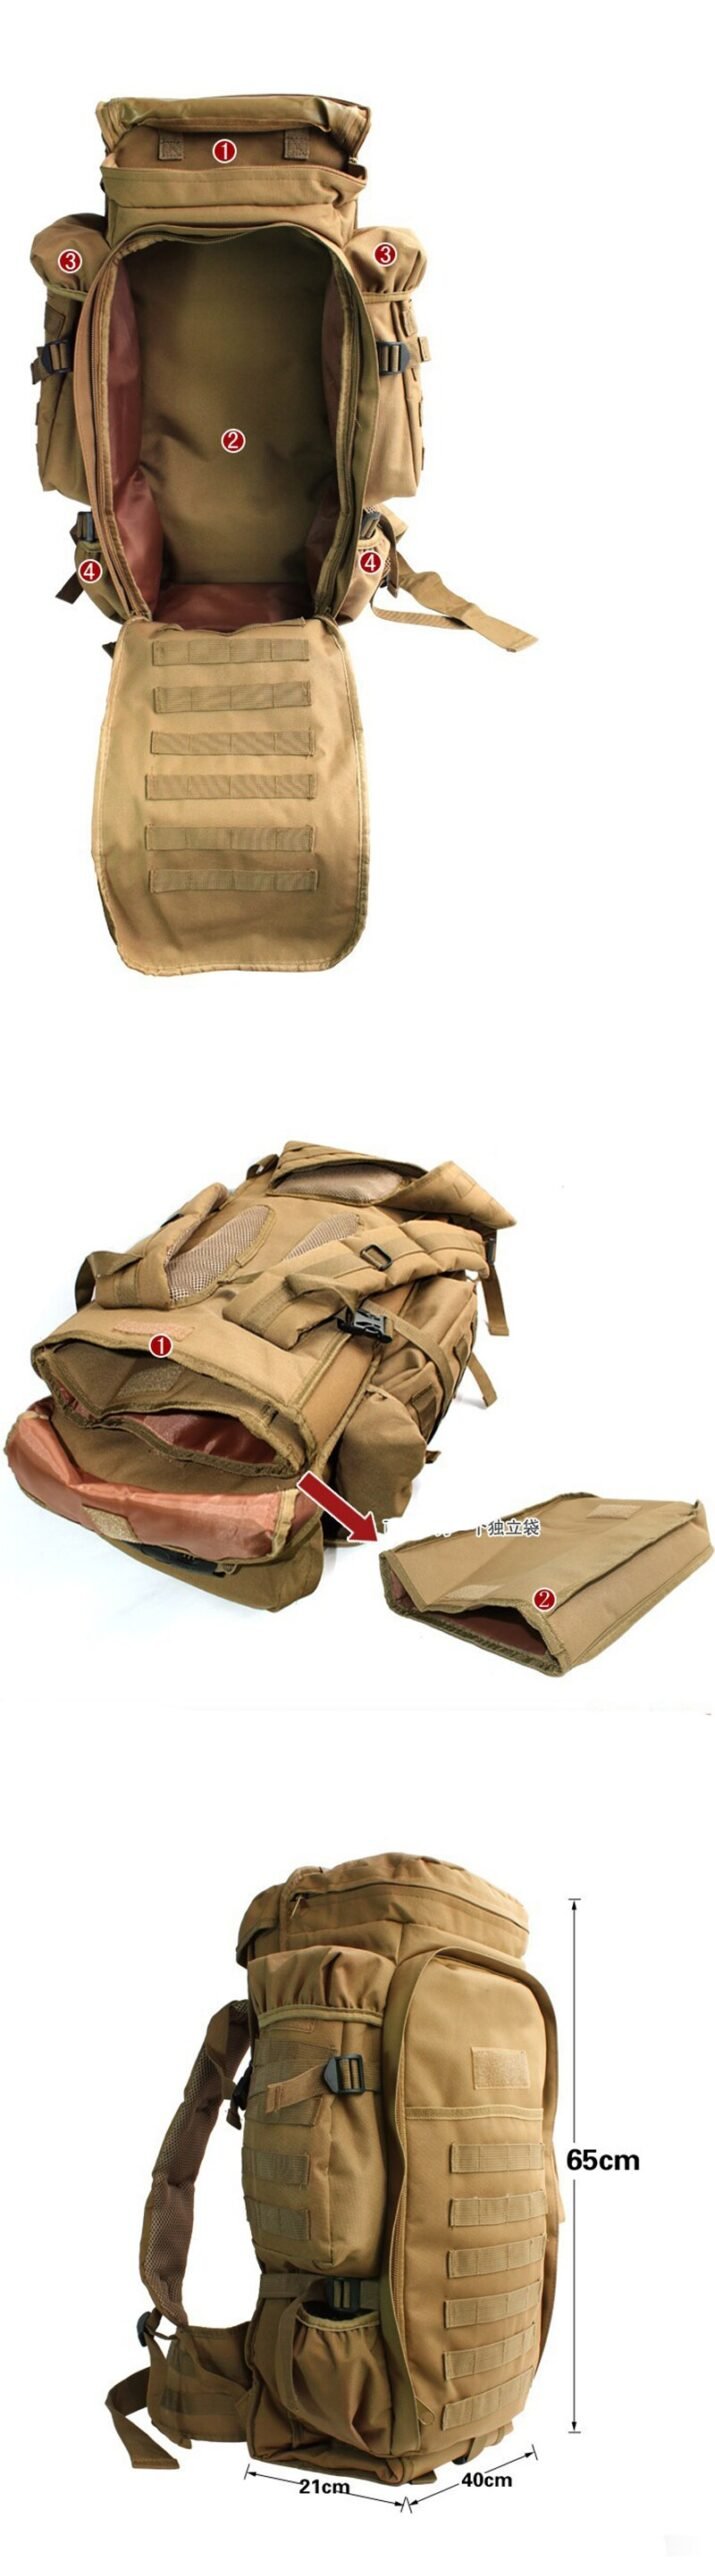 Mochila táctica militar de 70L, bolsa de Rifle Airsoft, impermeable, para viajes al aire libre, Trekking, escalada, Camping, mochila de asalto